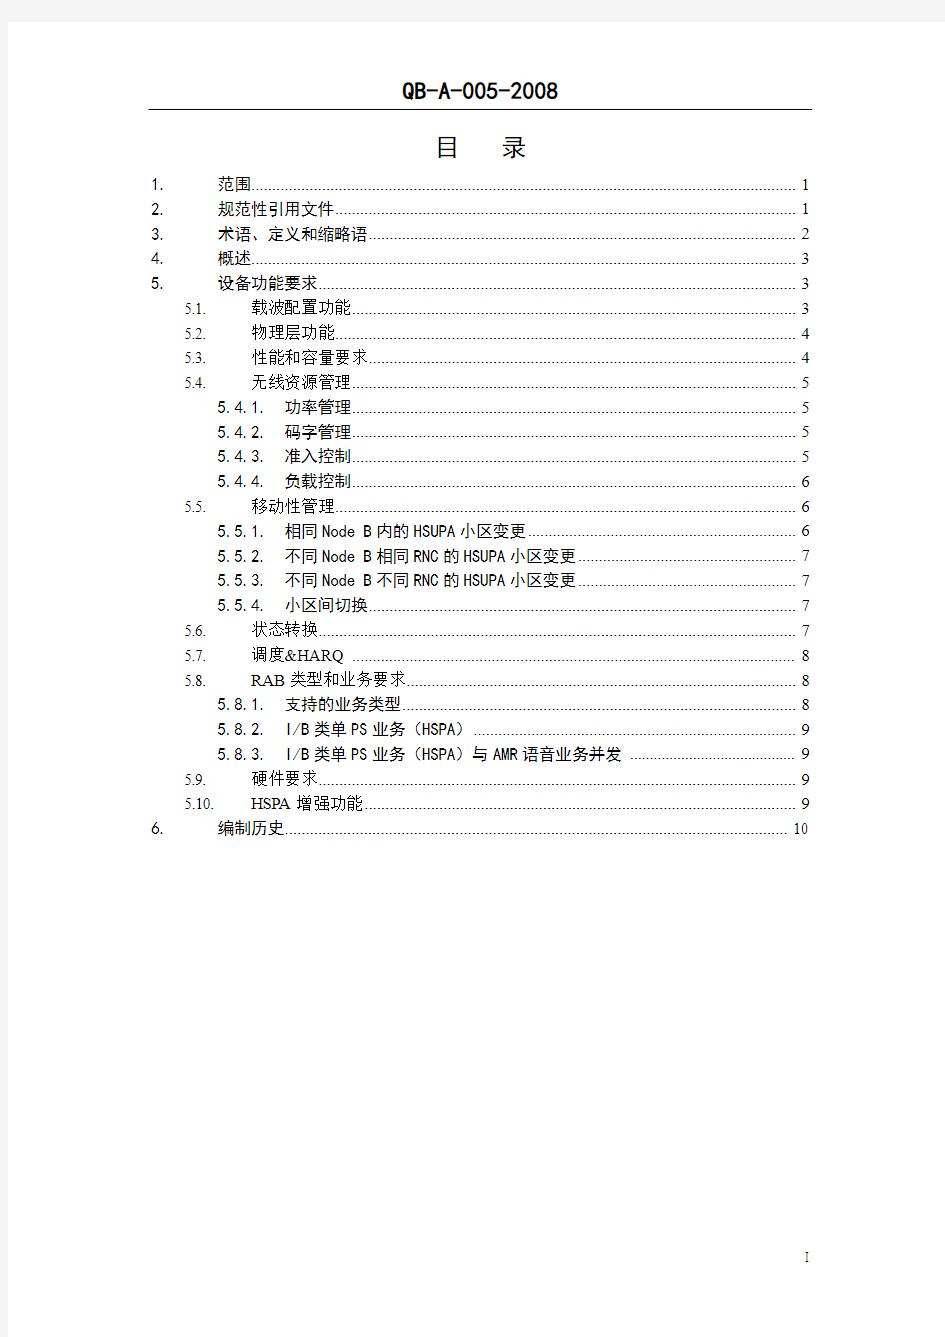 中国移动TD-SCDMA无线子系统设备规范 HSUPA分册V1.0.0